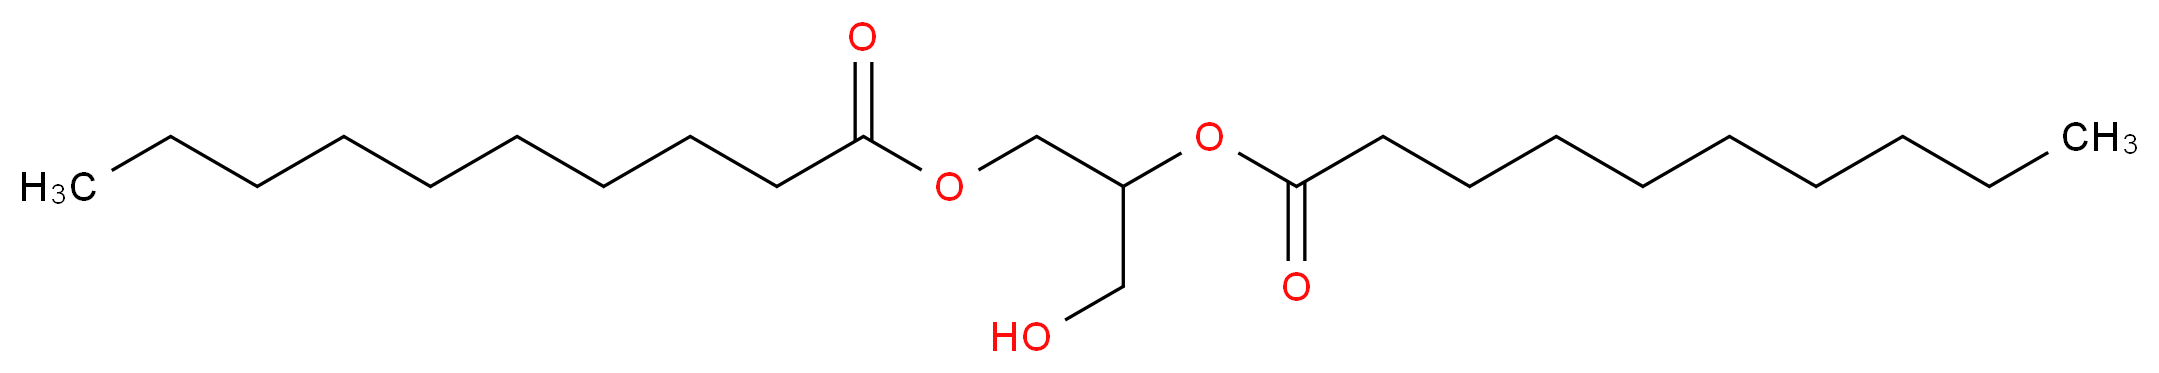 1,2-Didecanoyl-rac-glycerol_Molecular_structure_CAS_82950-64-9)